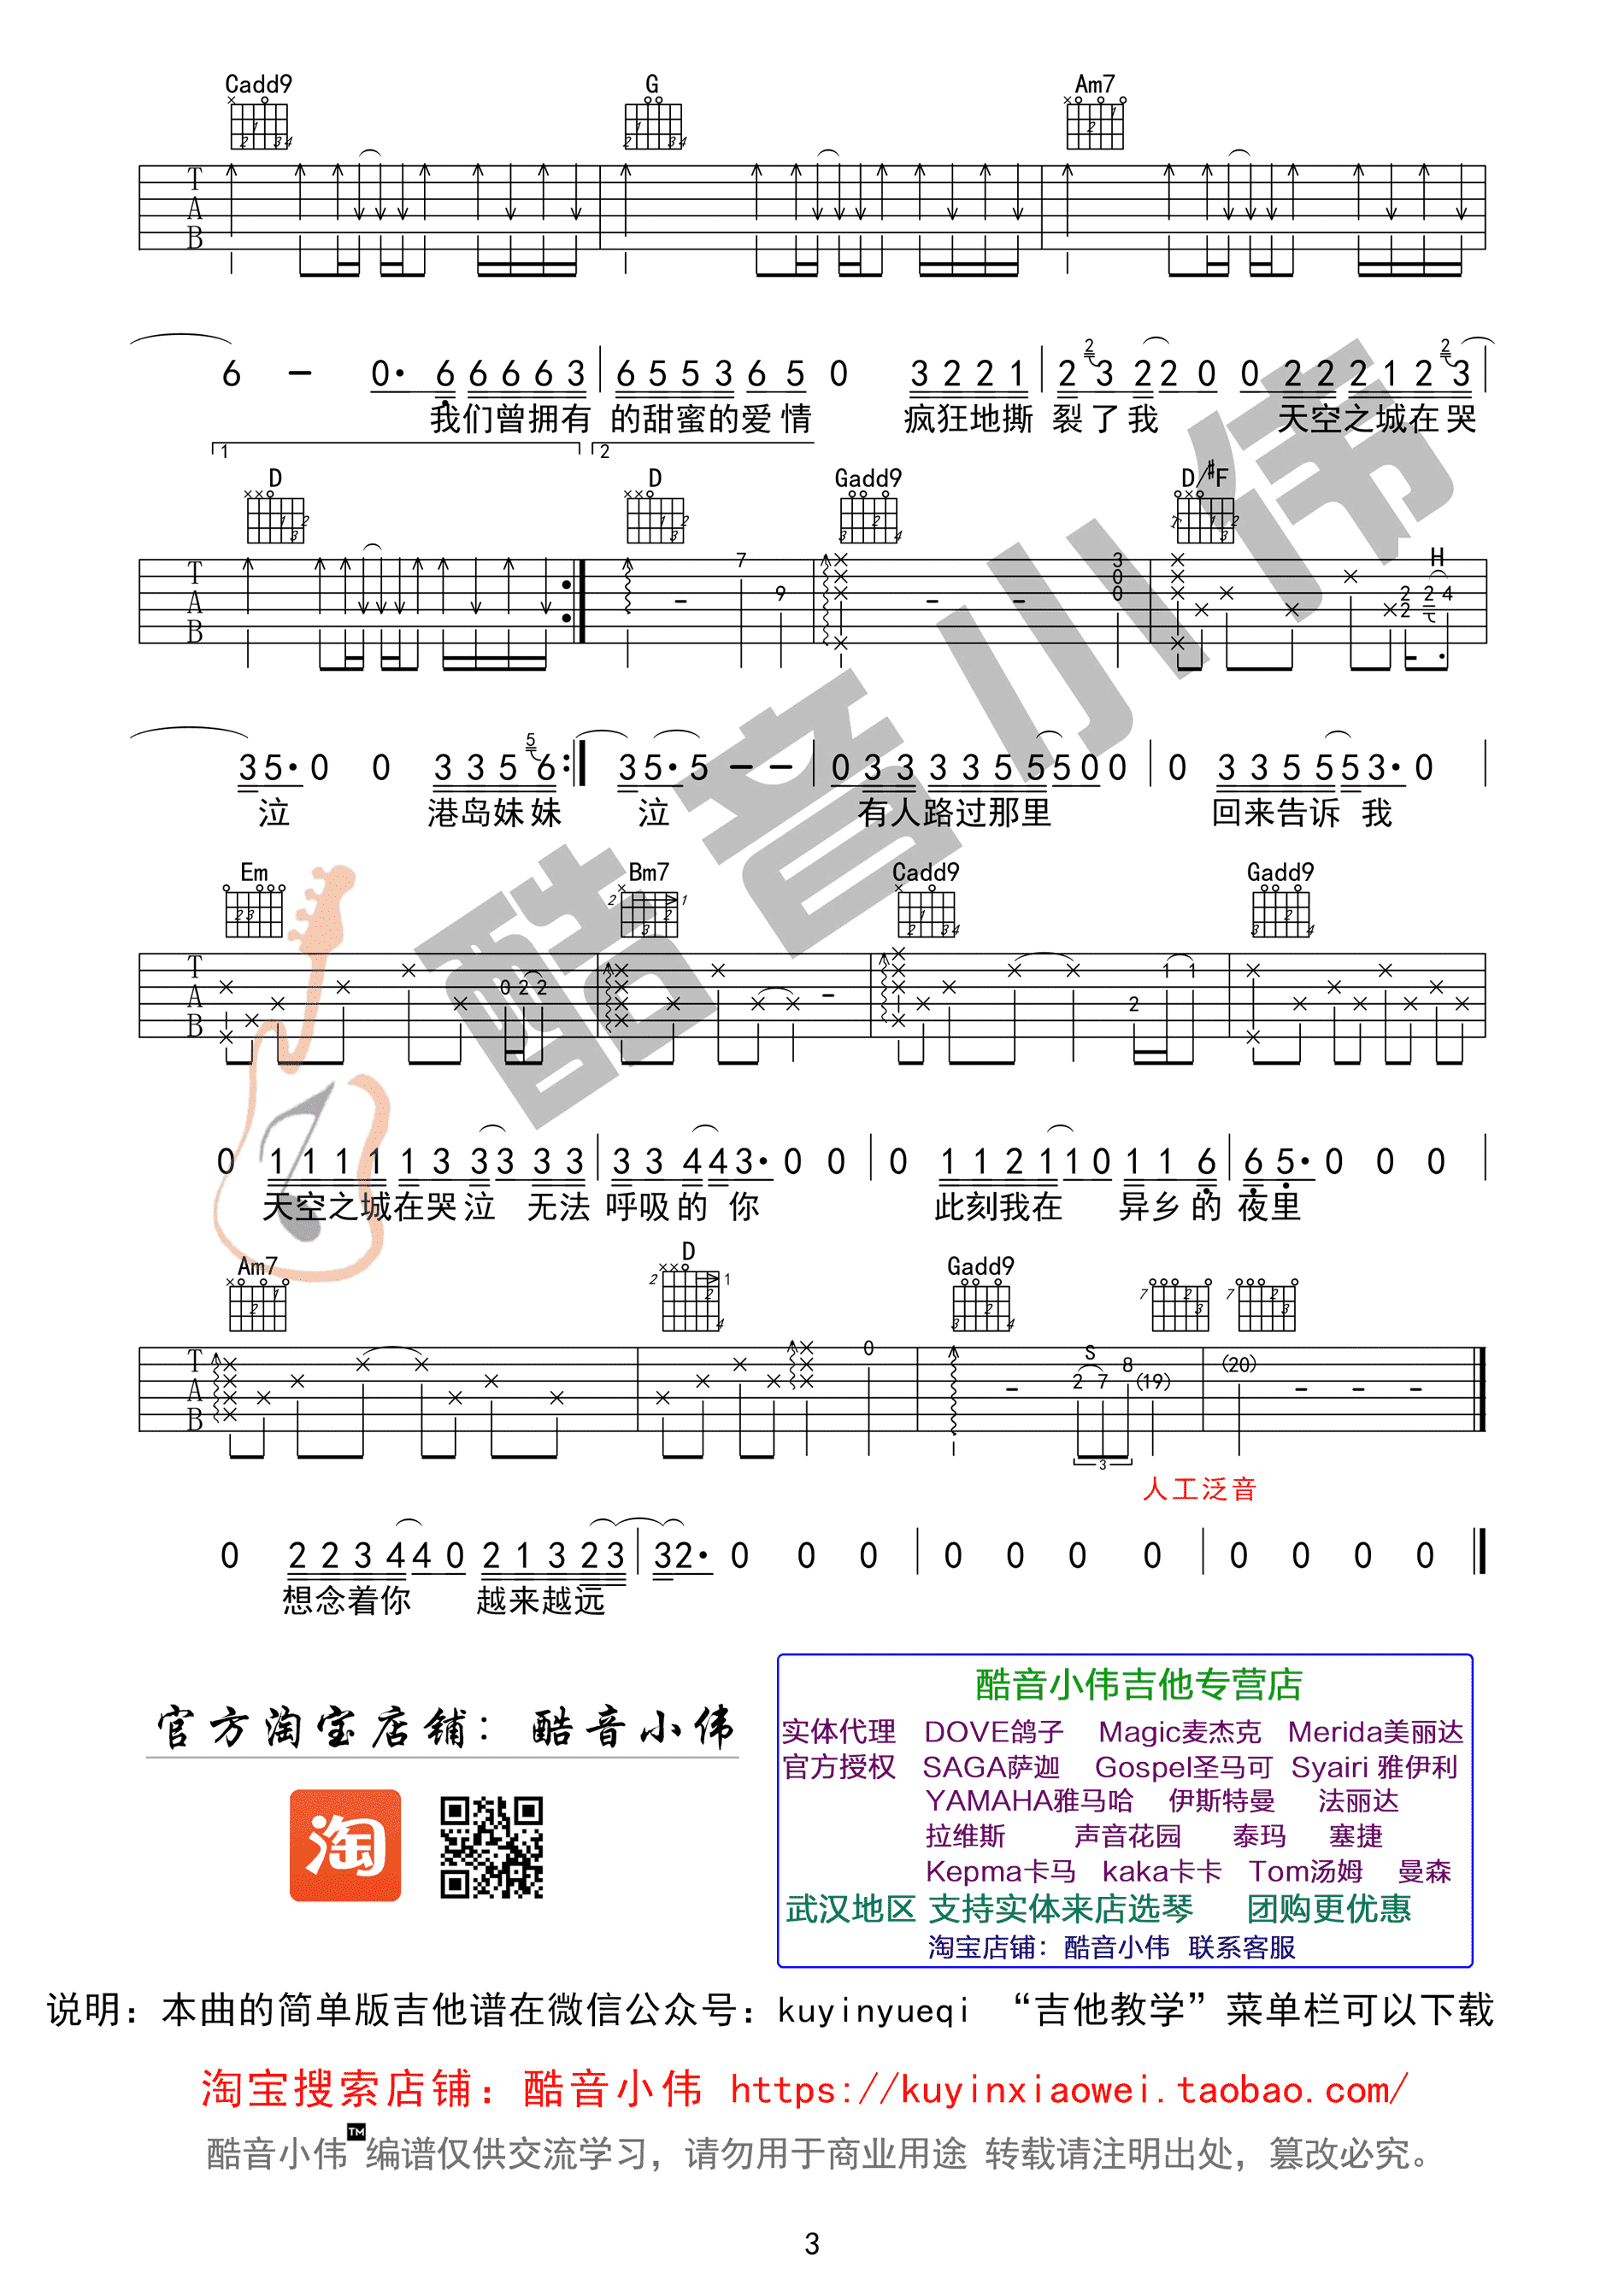 蒋敦豪 - 天空之城(音艺吉他弹唱系列第四季:第27集) [弹唱 中国新歌声版] 吉他谱